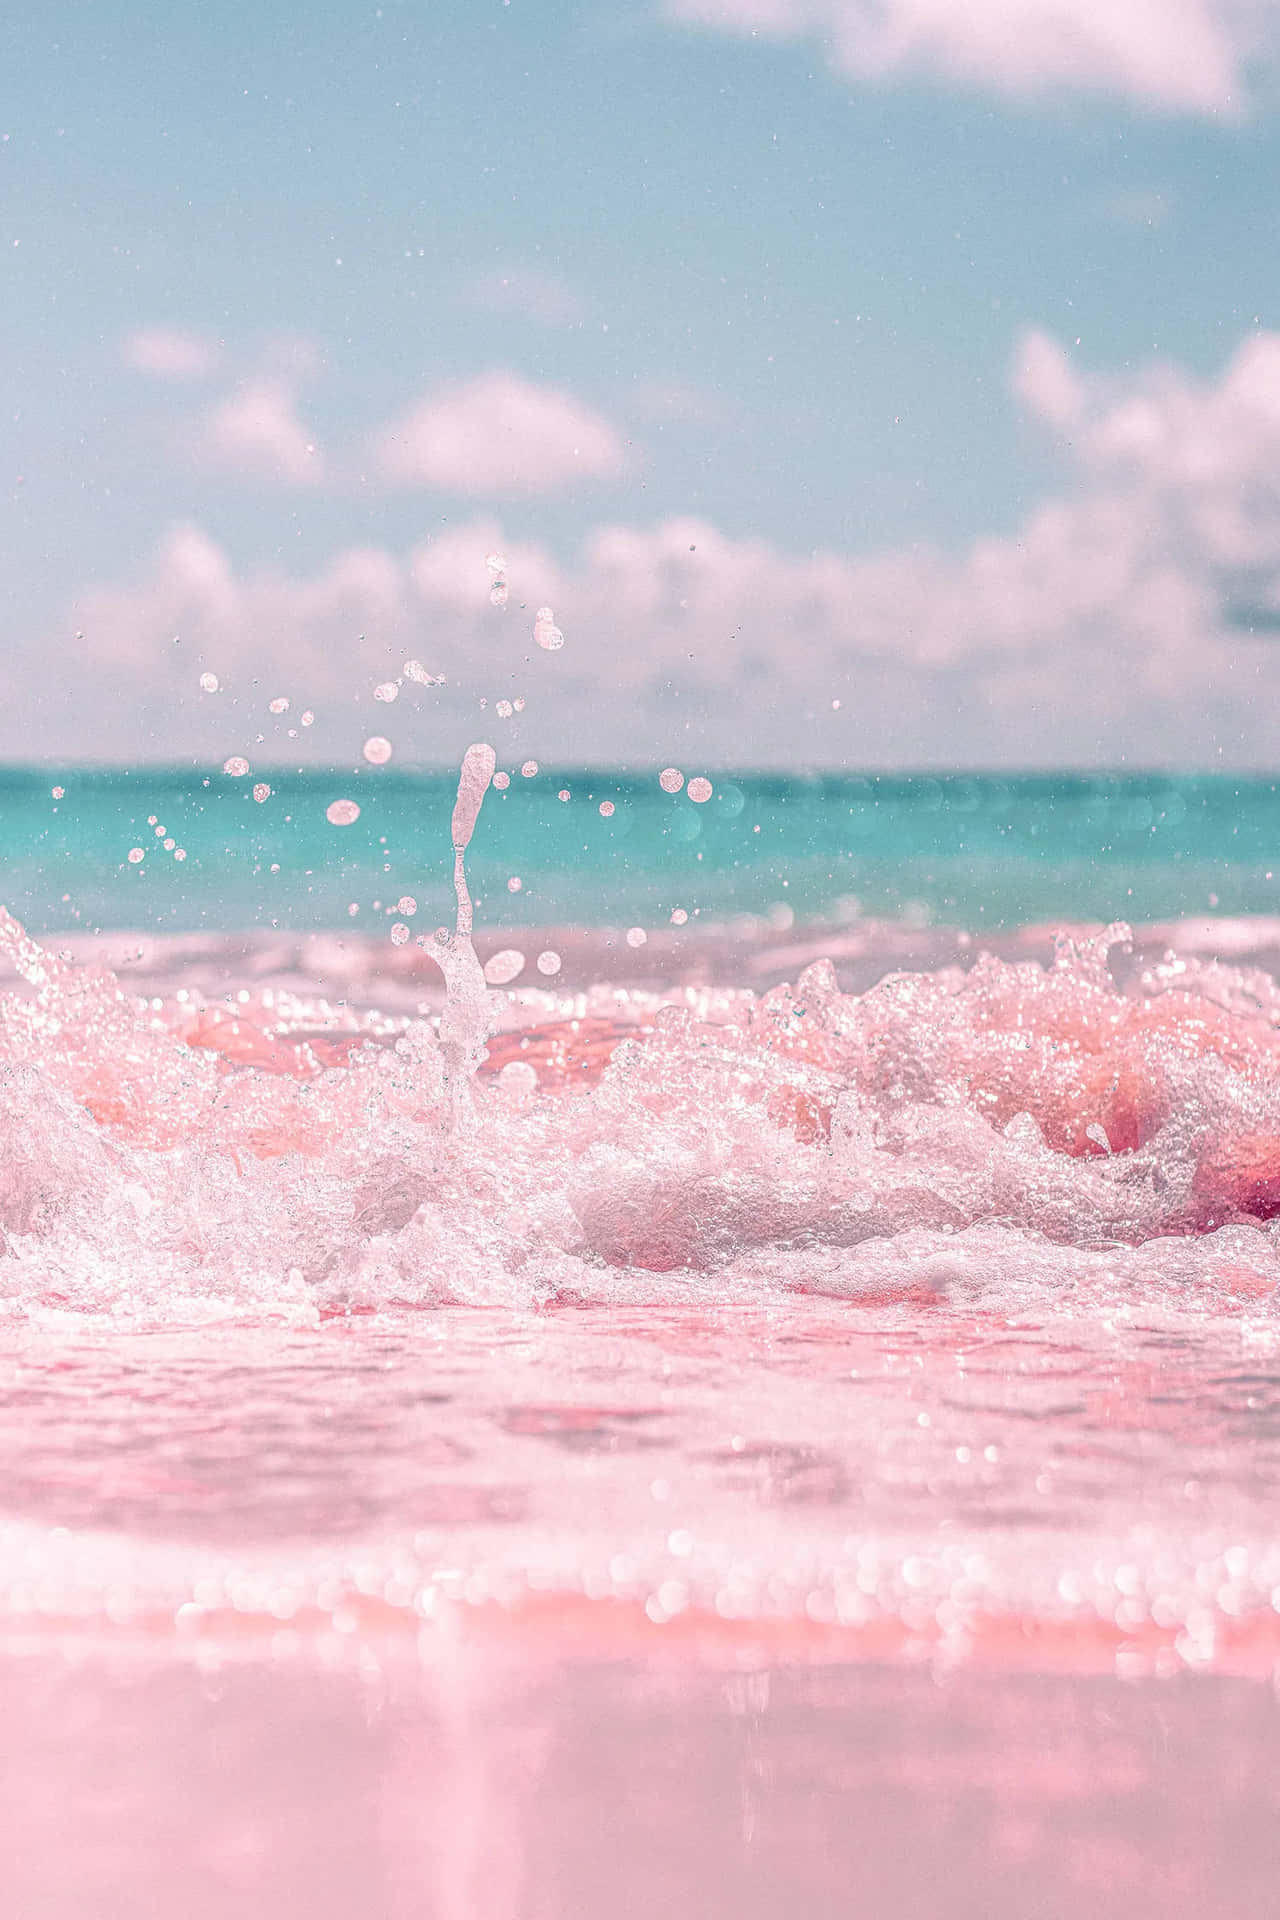 Một hình nền thẩm mỹ màu hồng cho bãi biển giúp mang lại sự lãng mạn và yêu đời. Những chi tiết nhỏ như cát và sóng biển được tô điểm bằng màu hồng nhạt, tạo ra một khung cảnh tuyệt đẹp và độc đáo. Tìm hiểu thêm về hình nền thẩm mỹ màu hồng này để trang trí cho chiếc điện thoại của bạn nào.